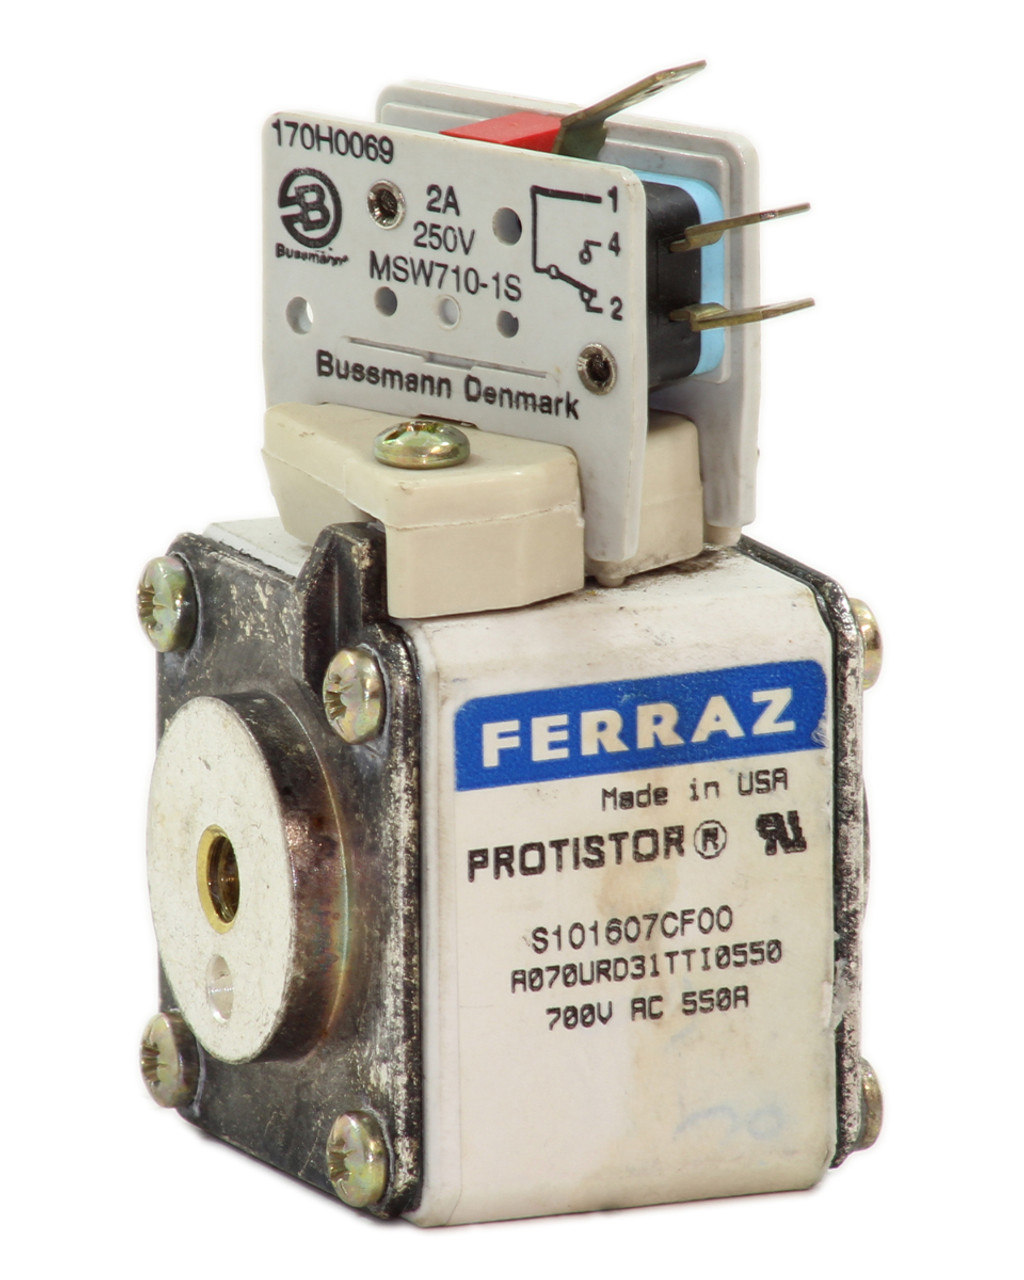 Ferraz S101607CF00 Protistor Fuse 550A 700V w/MSW710-1S Microswitch